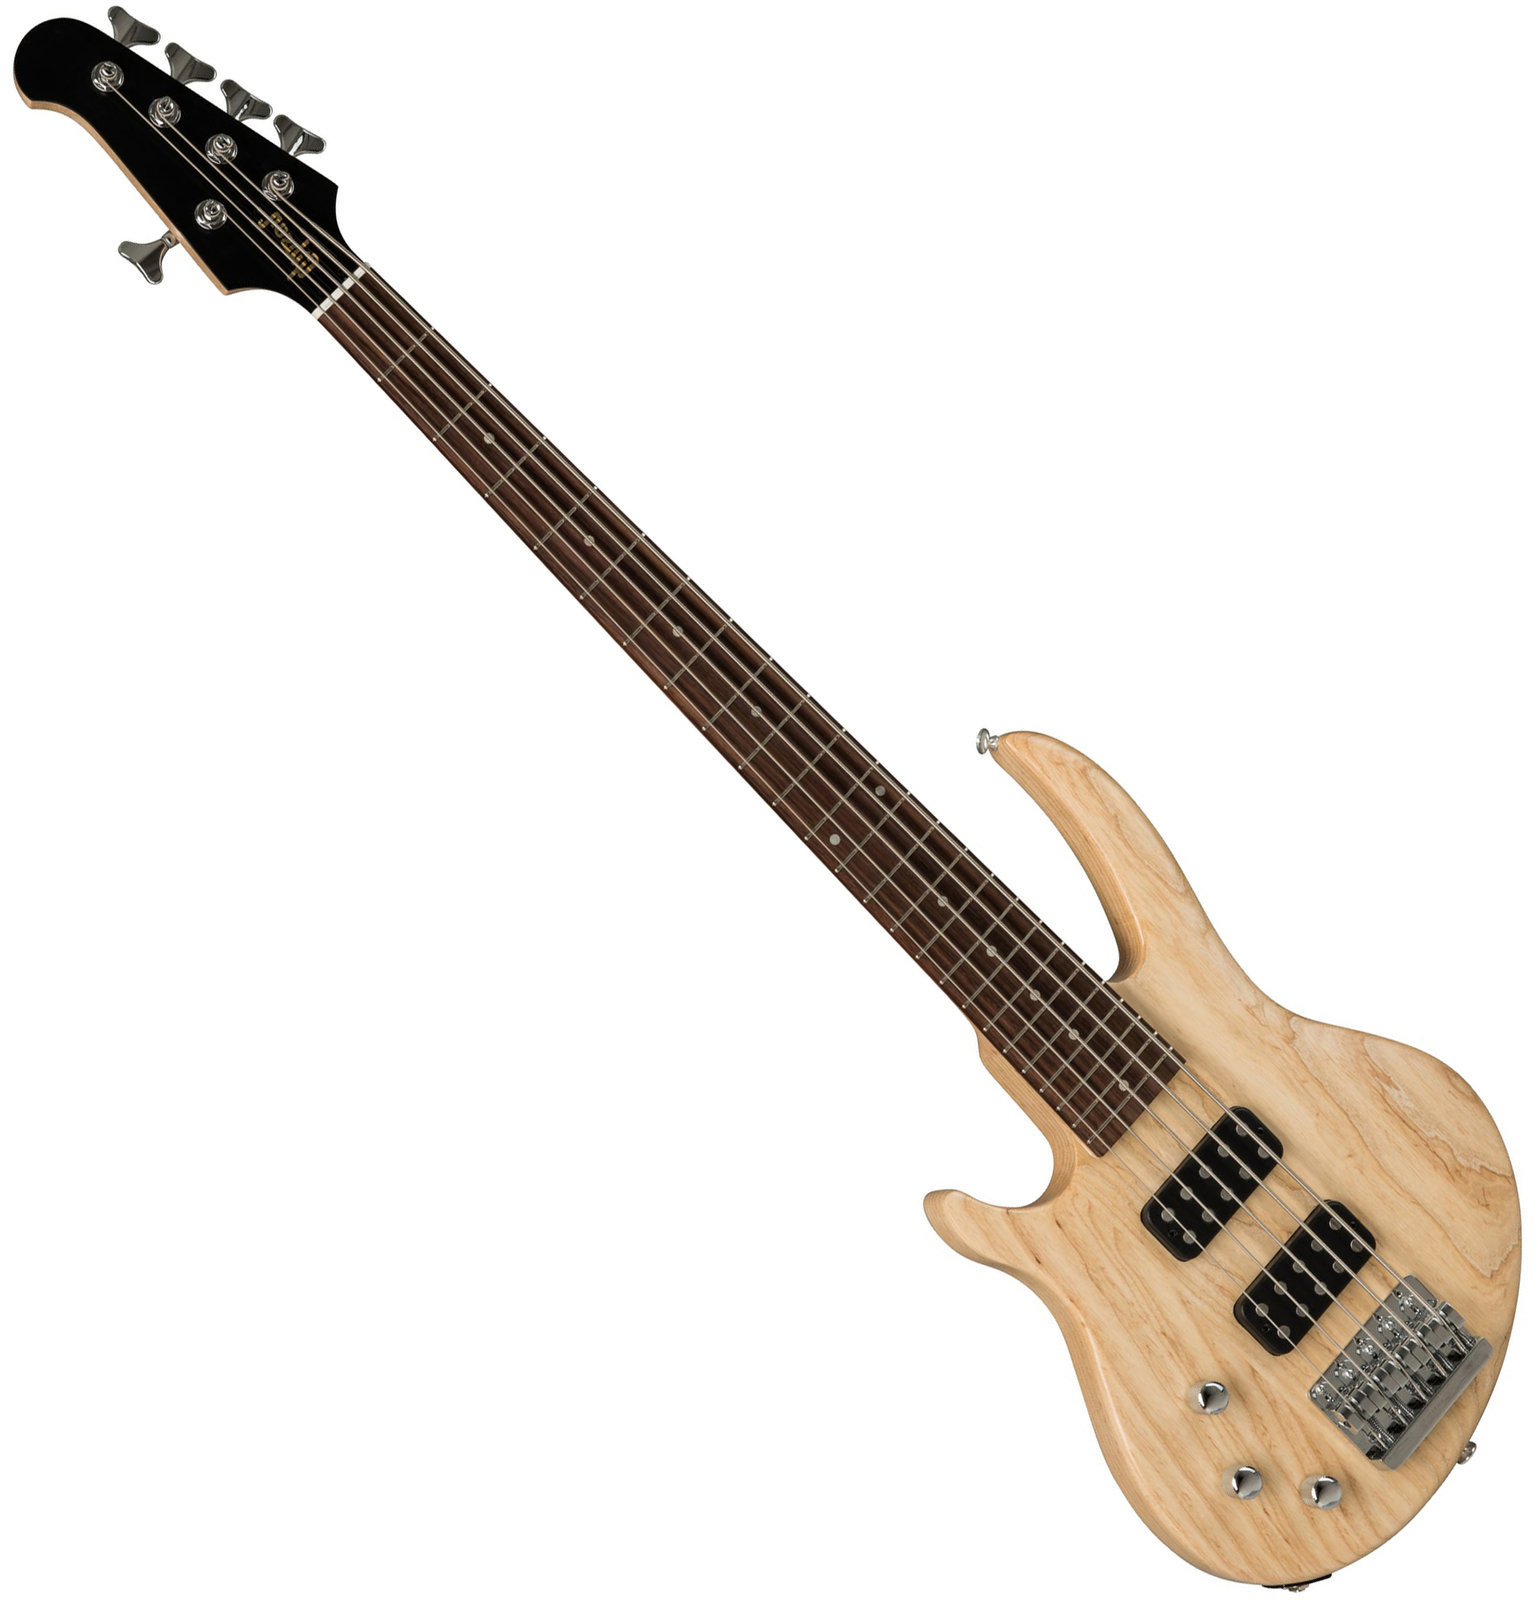 Baixo para esquerdino Gibson EB Bass 5 String 2019 Natural Satin Lefty